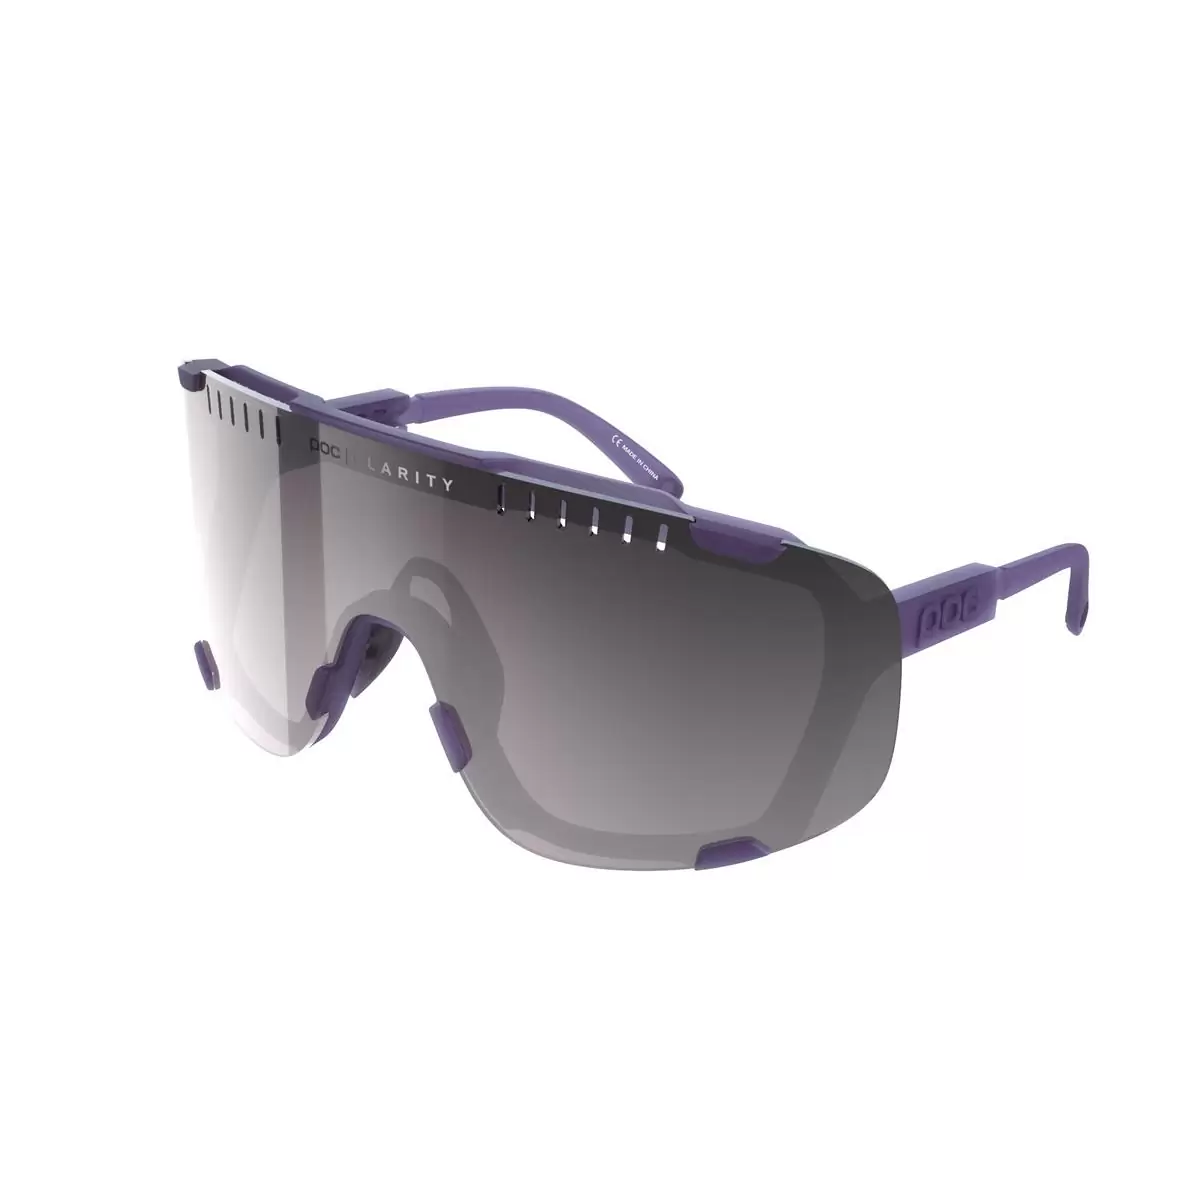 Devour Sunglesses Sapphire Purple Translucent Lens Violet/Silver Mirror - image